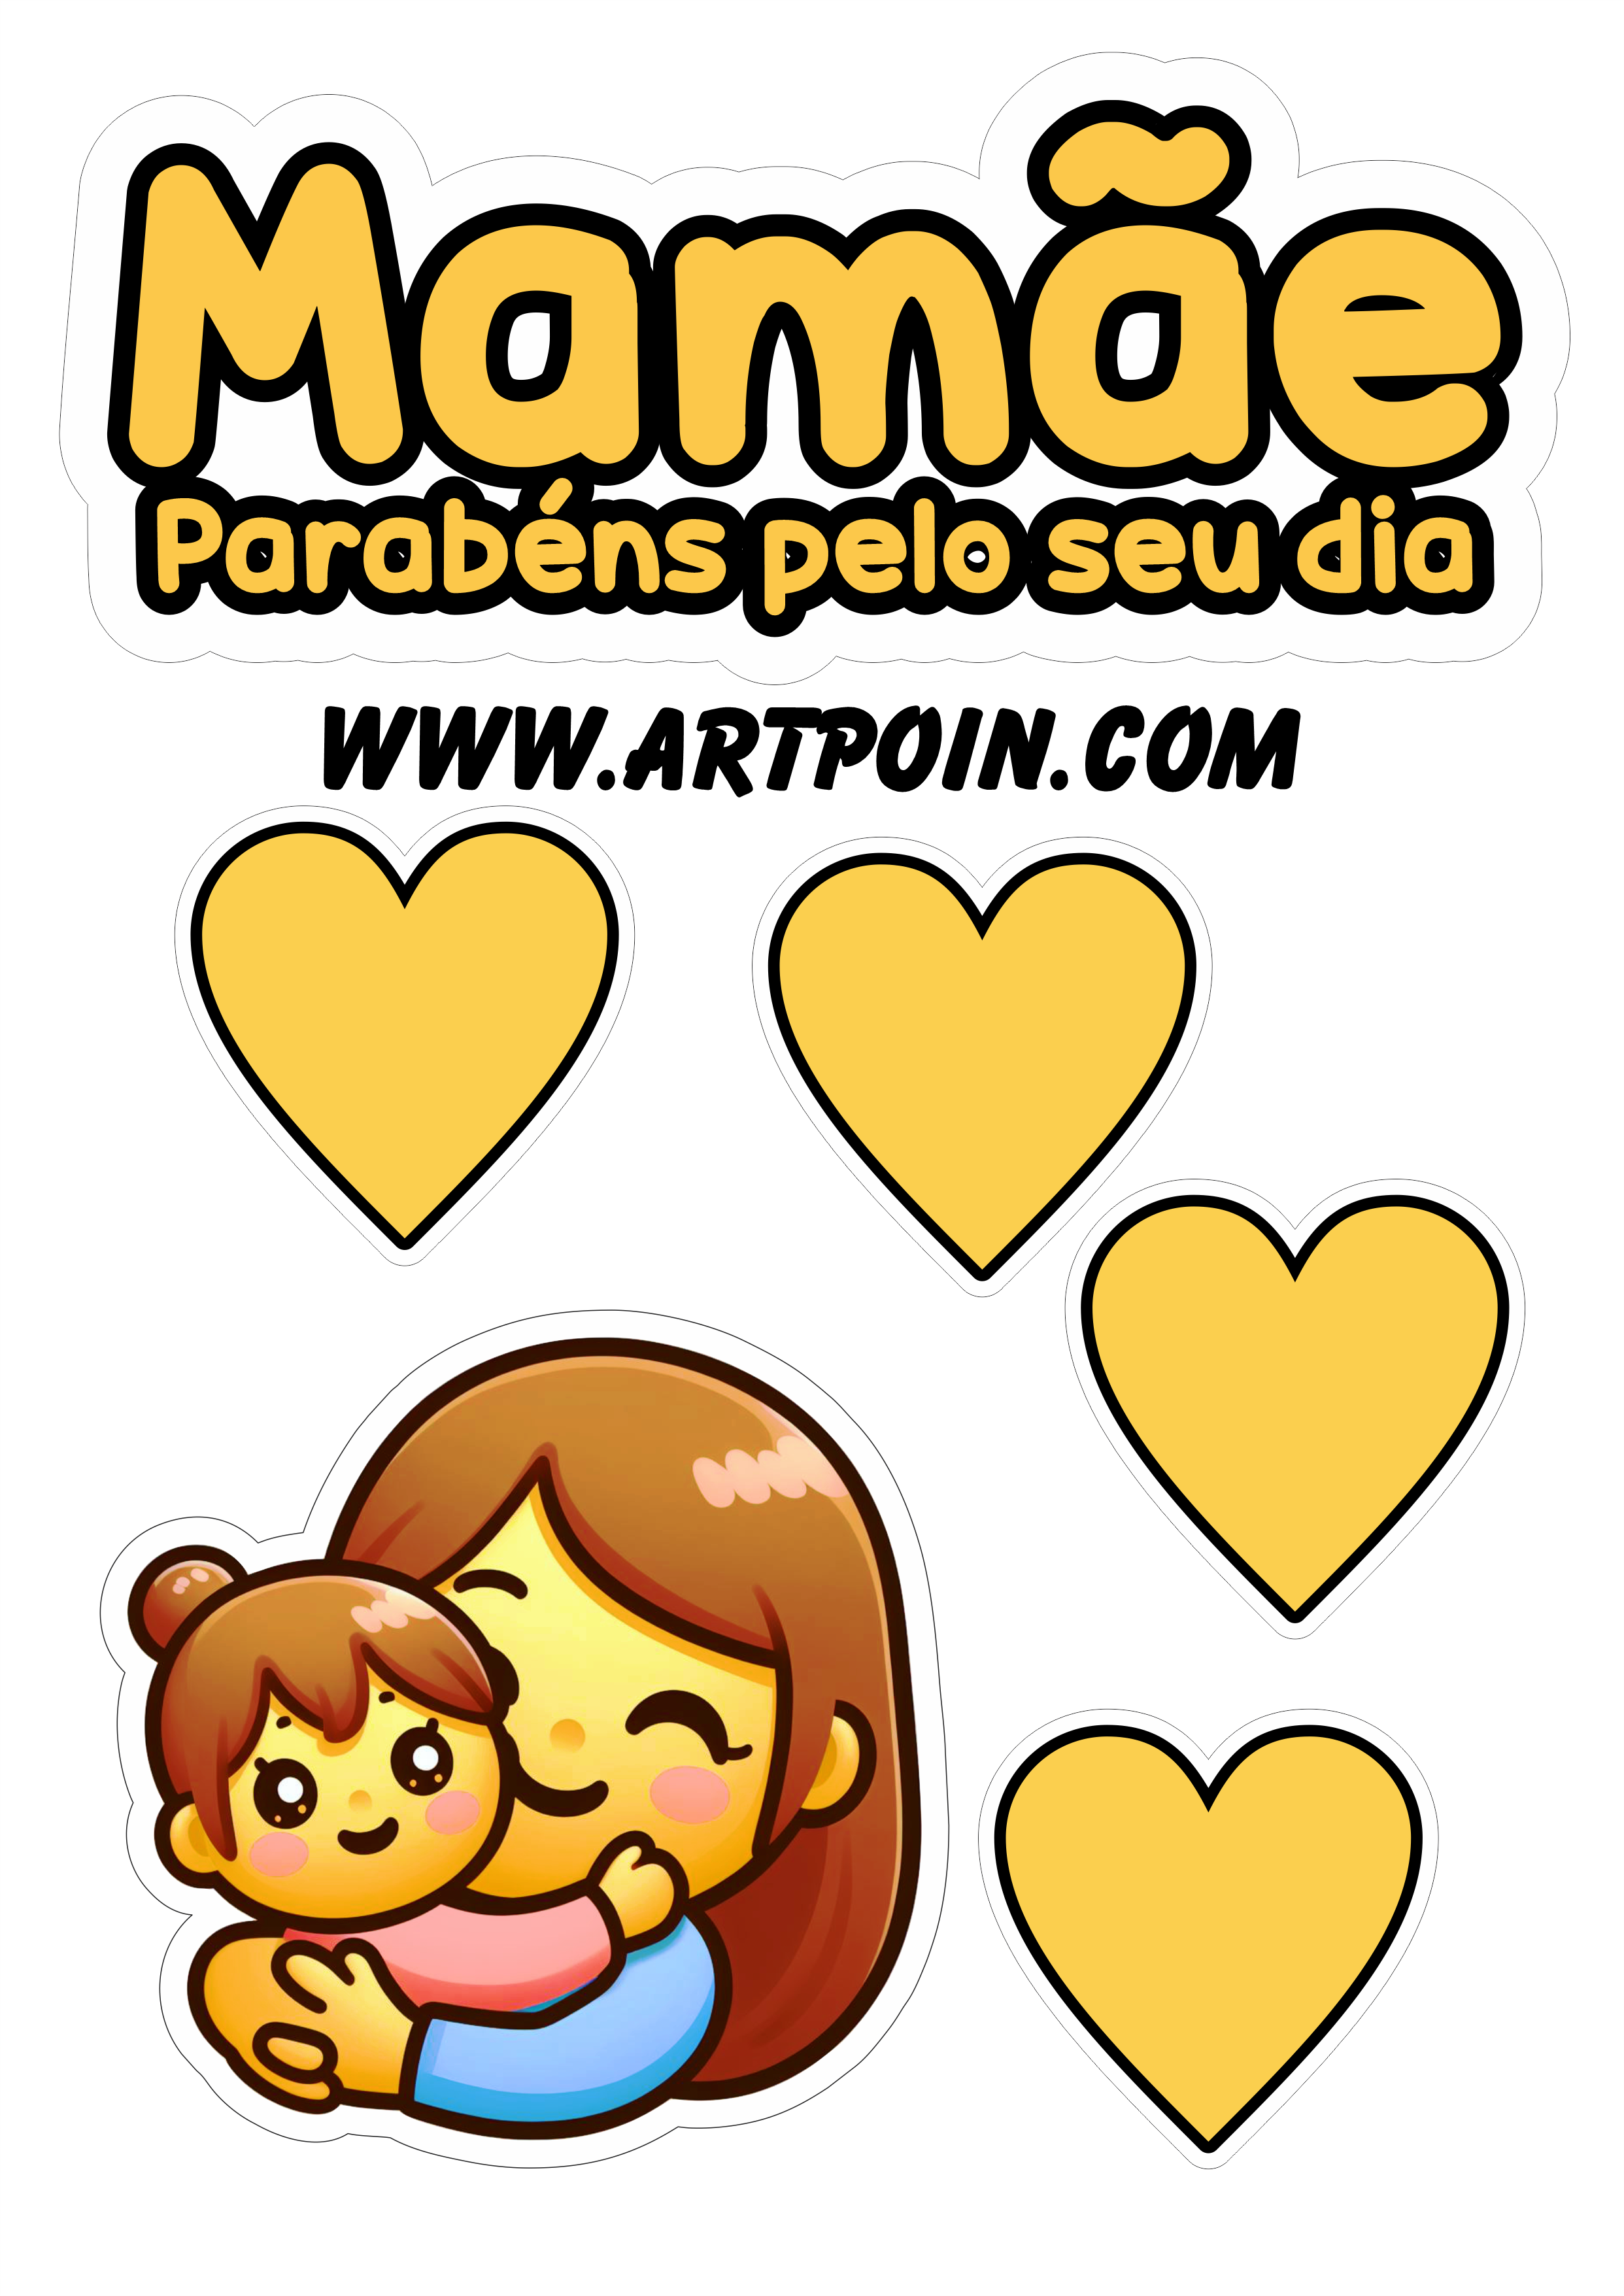 Topo de bolo Mamãe parabéns pelo seu dia emoji com corações free design png